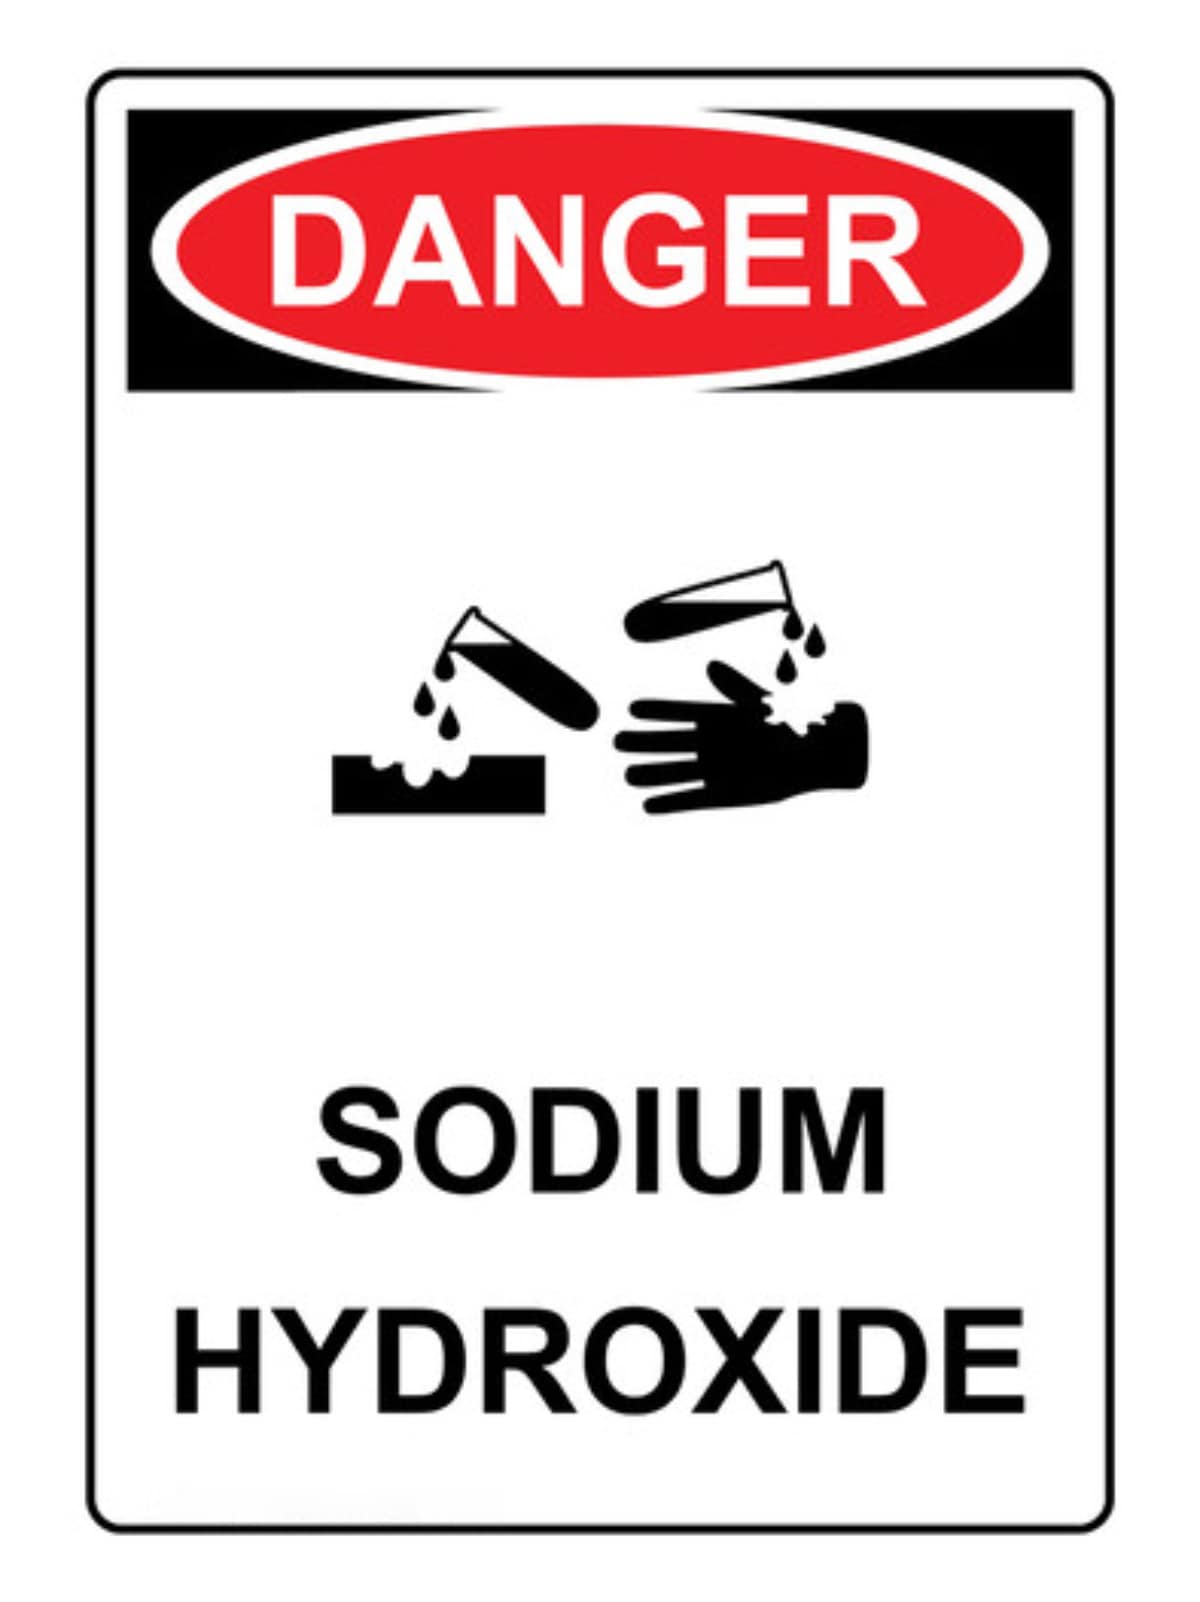 Sodium Hydroxide warning signage.